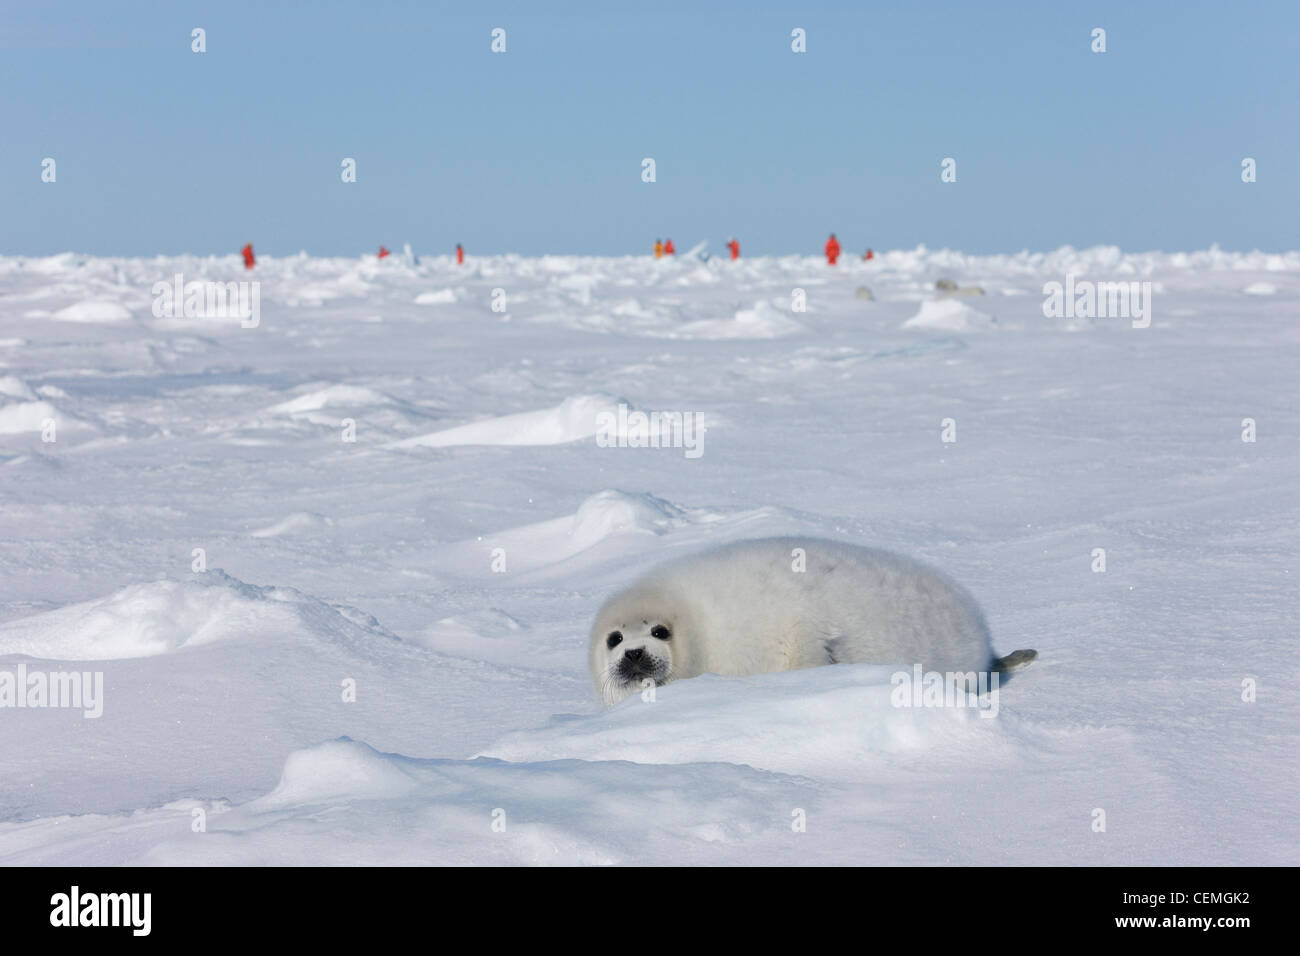 Pup focas arpa sobre el hielo, los turistas en la distancia, Iles de la Madeleine, Canadá Foto de stock